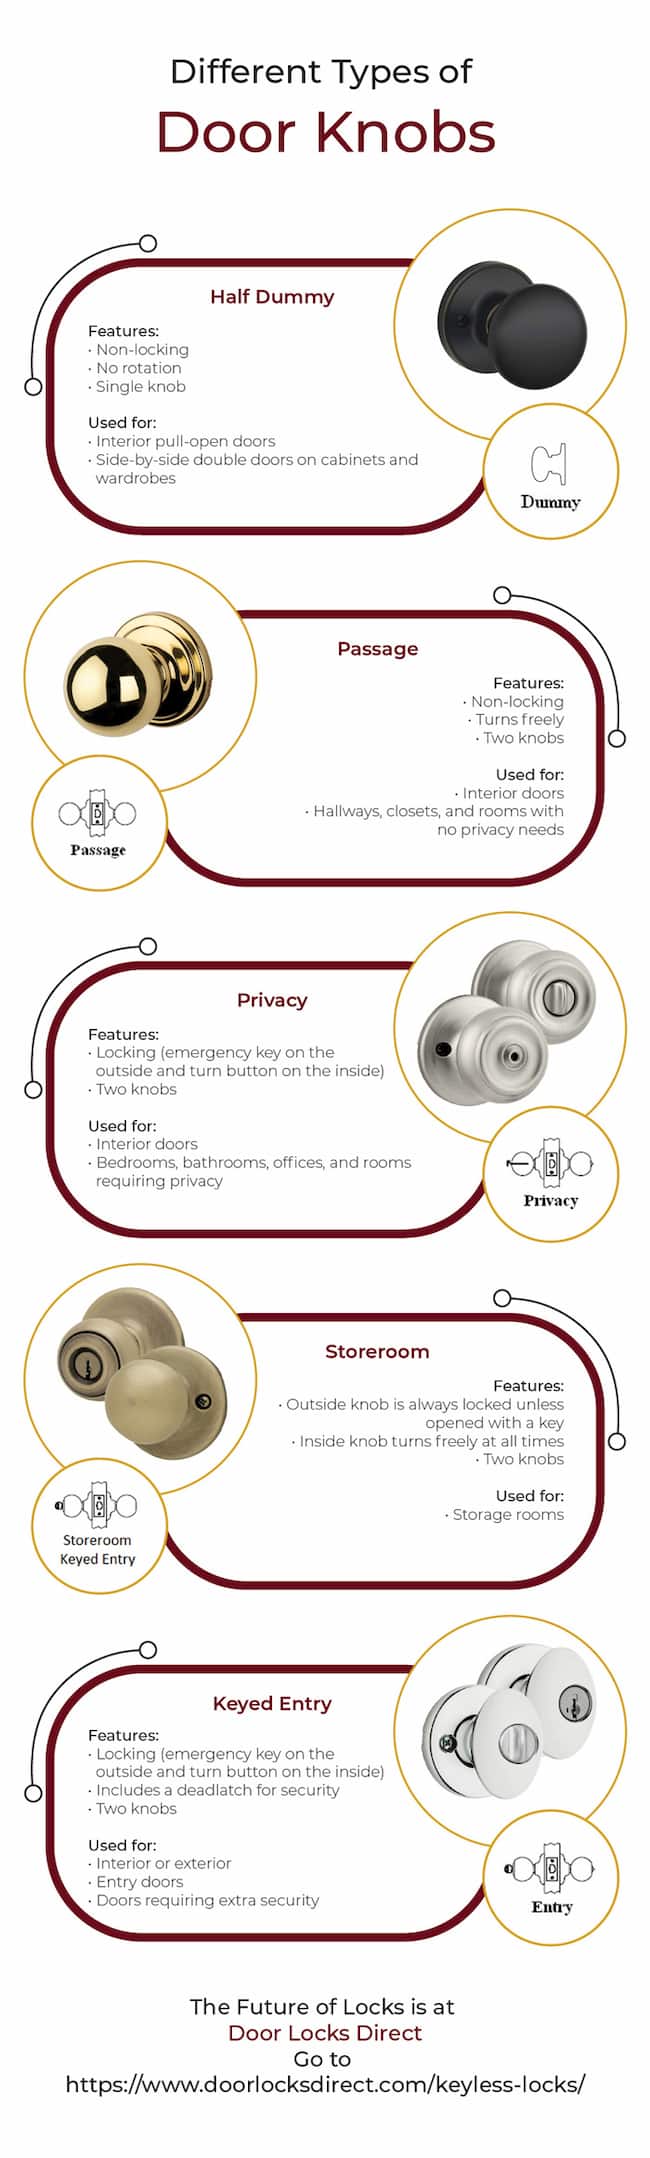 Doorknobs Infographic Doorlocksdirect V1r1 